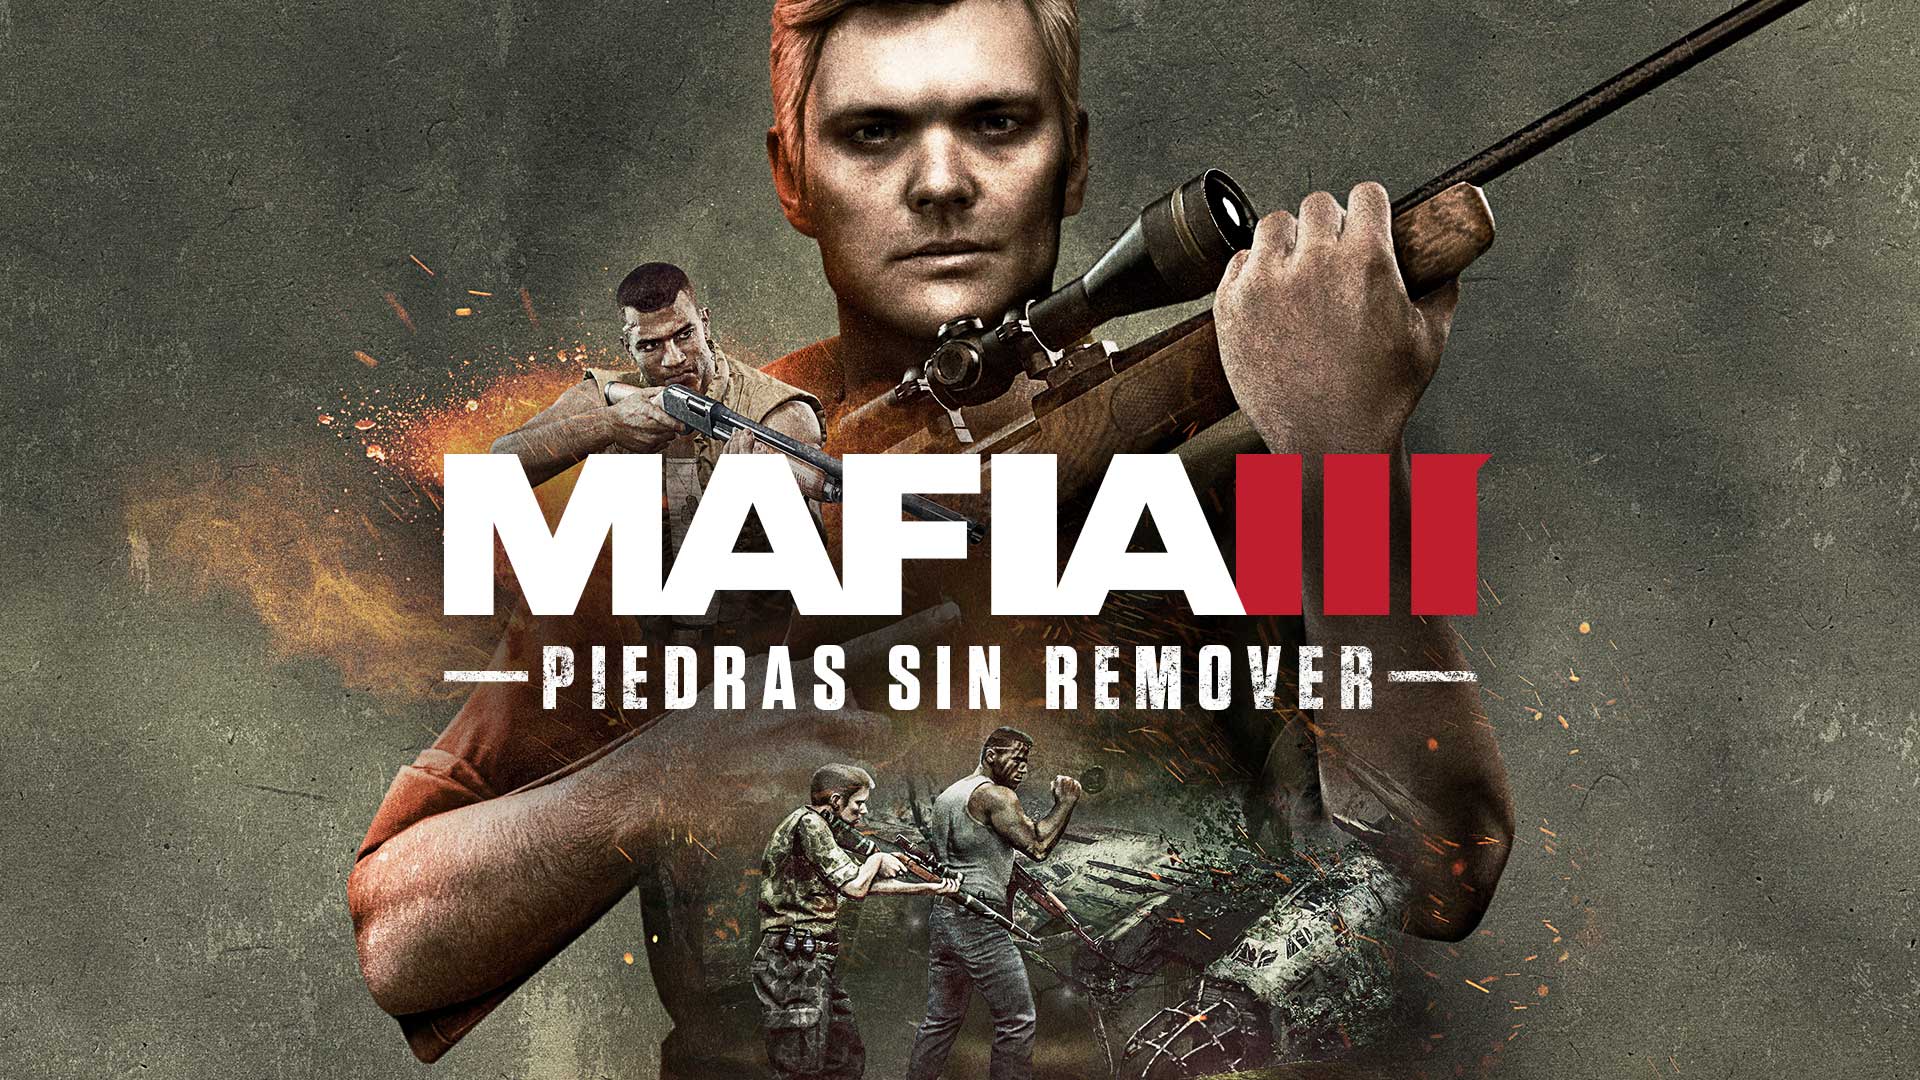 Piedras sin remover - Mafia III